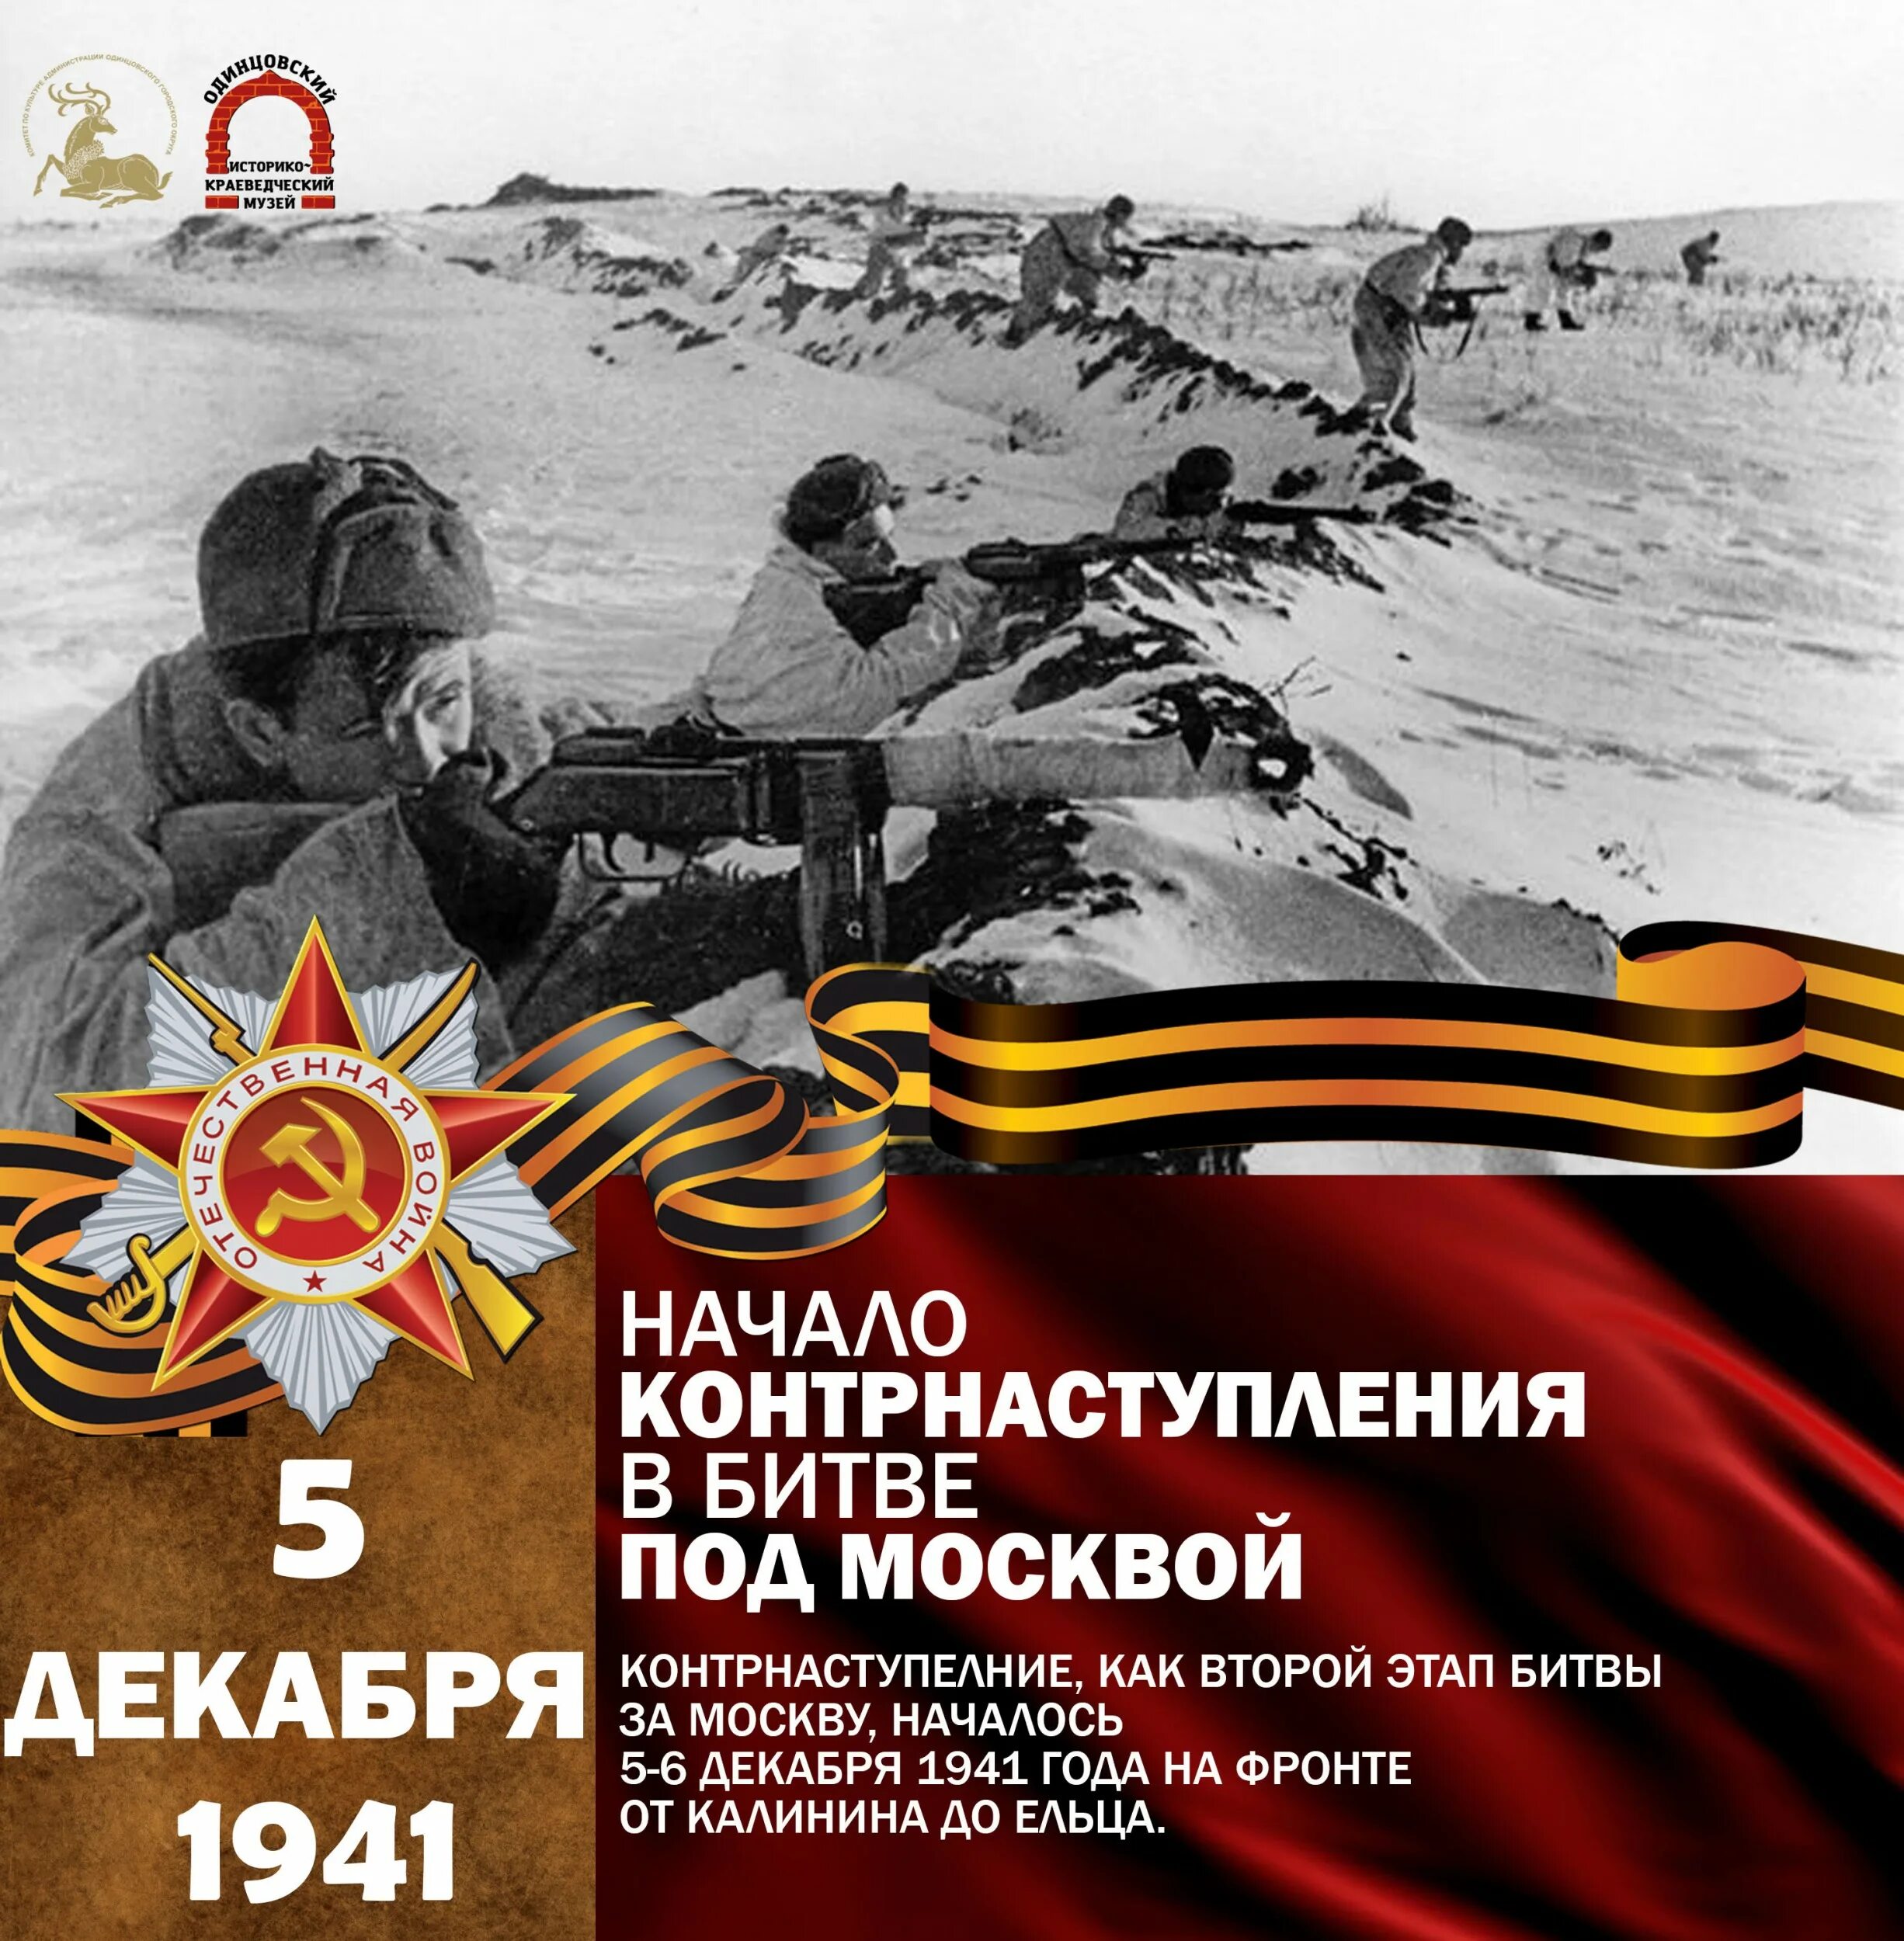 Контрнаступление 6 декабря 1941 г. 5 Декабря битва под Москвой. Контрнаступление советских войск. 5 Декабря 1941 года. Контрнаступление под Москвой день воинской славы.